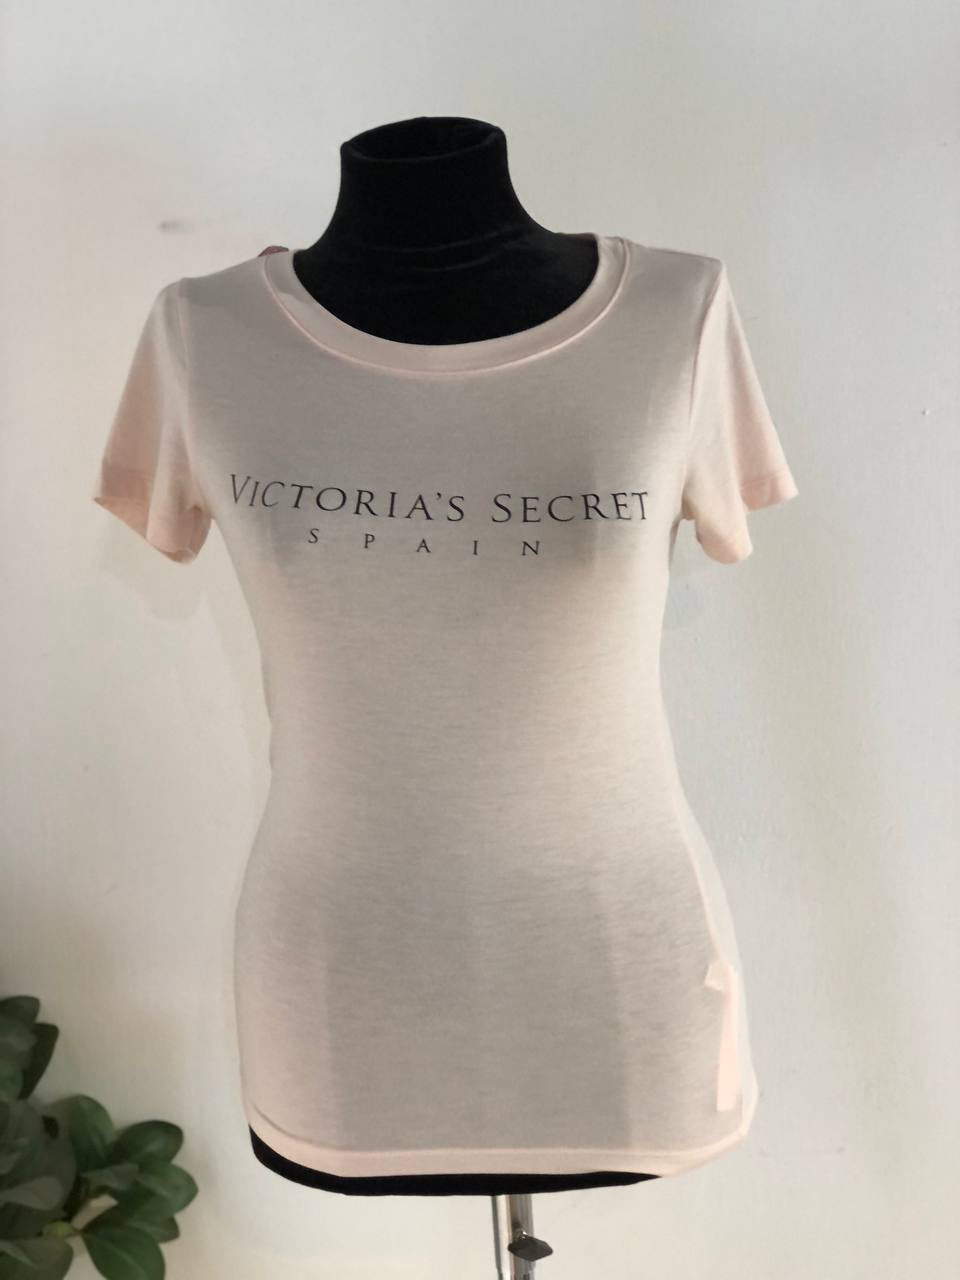 Victoria secret shirt